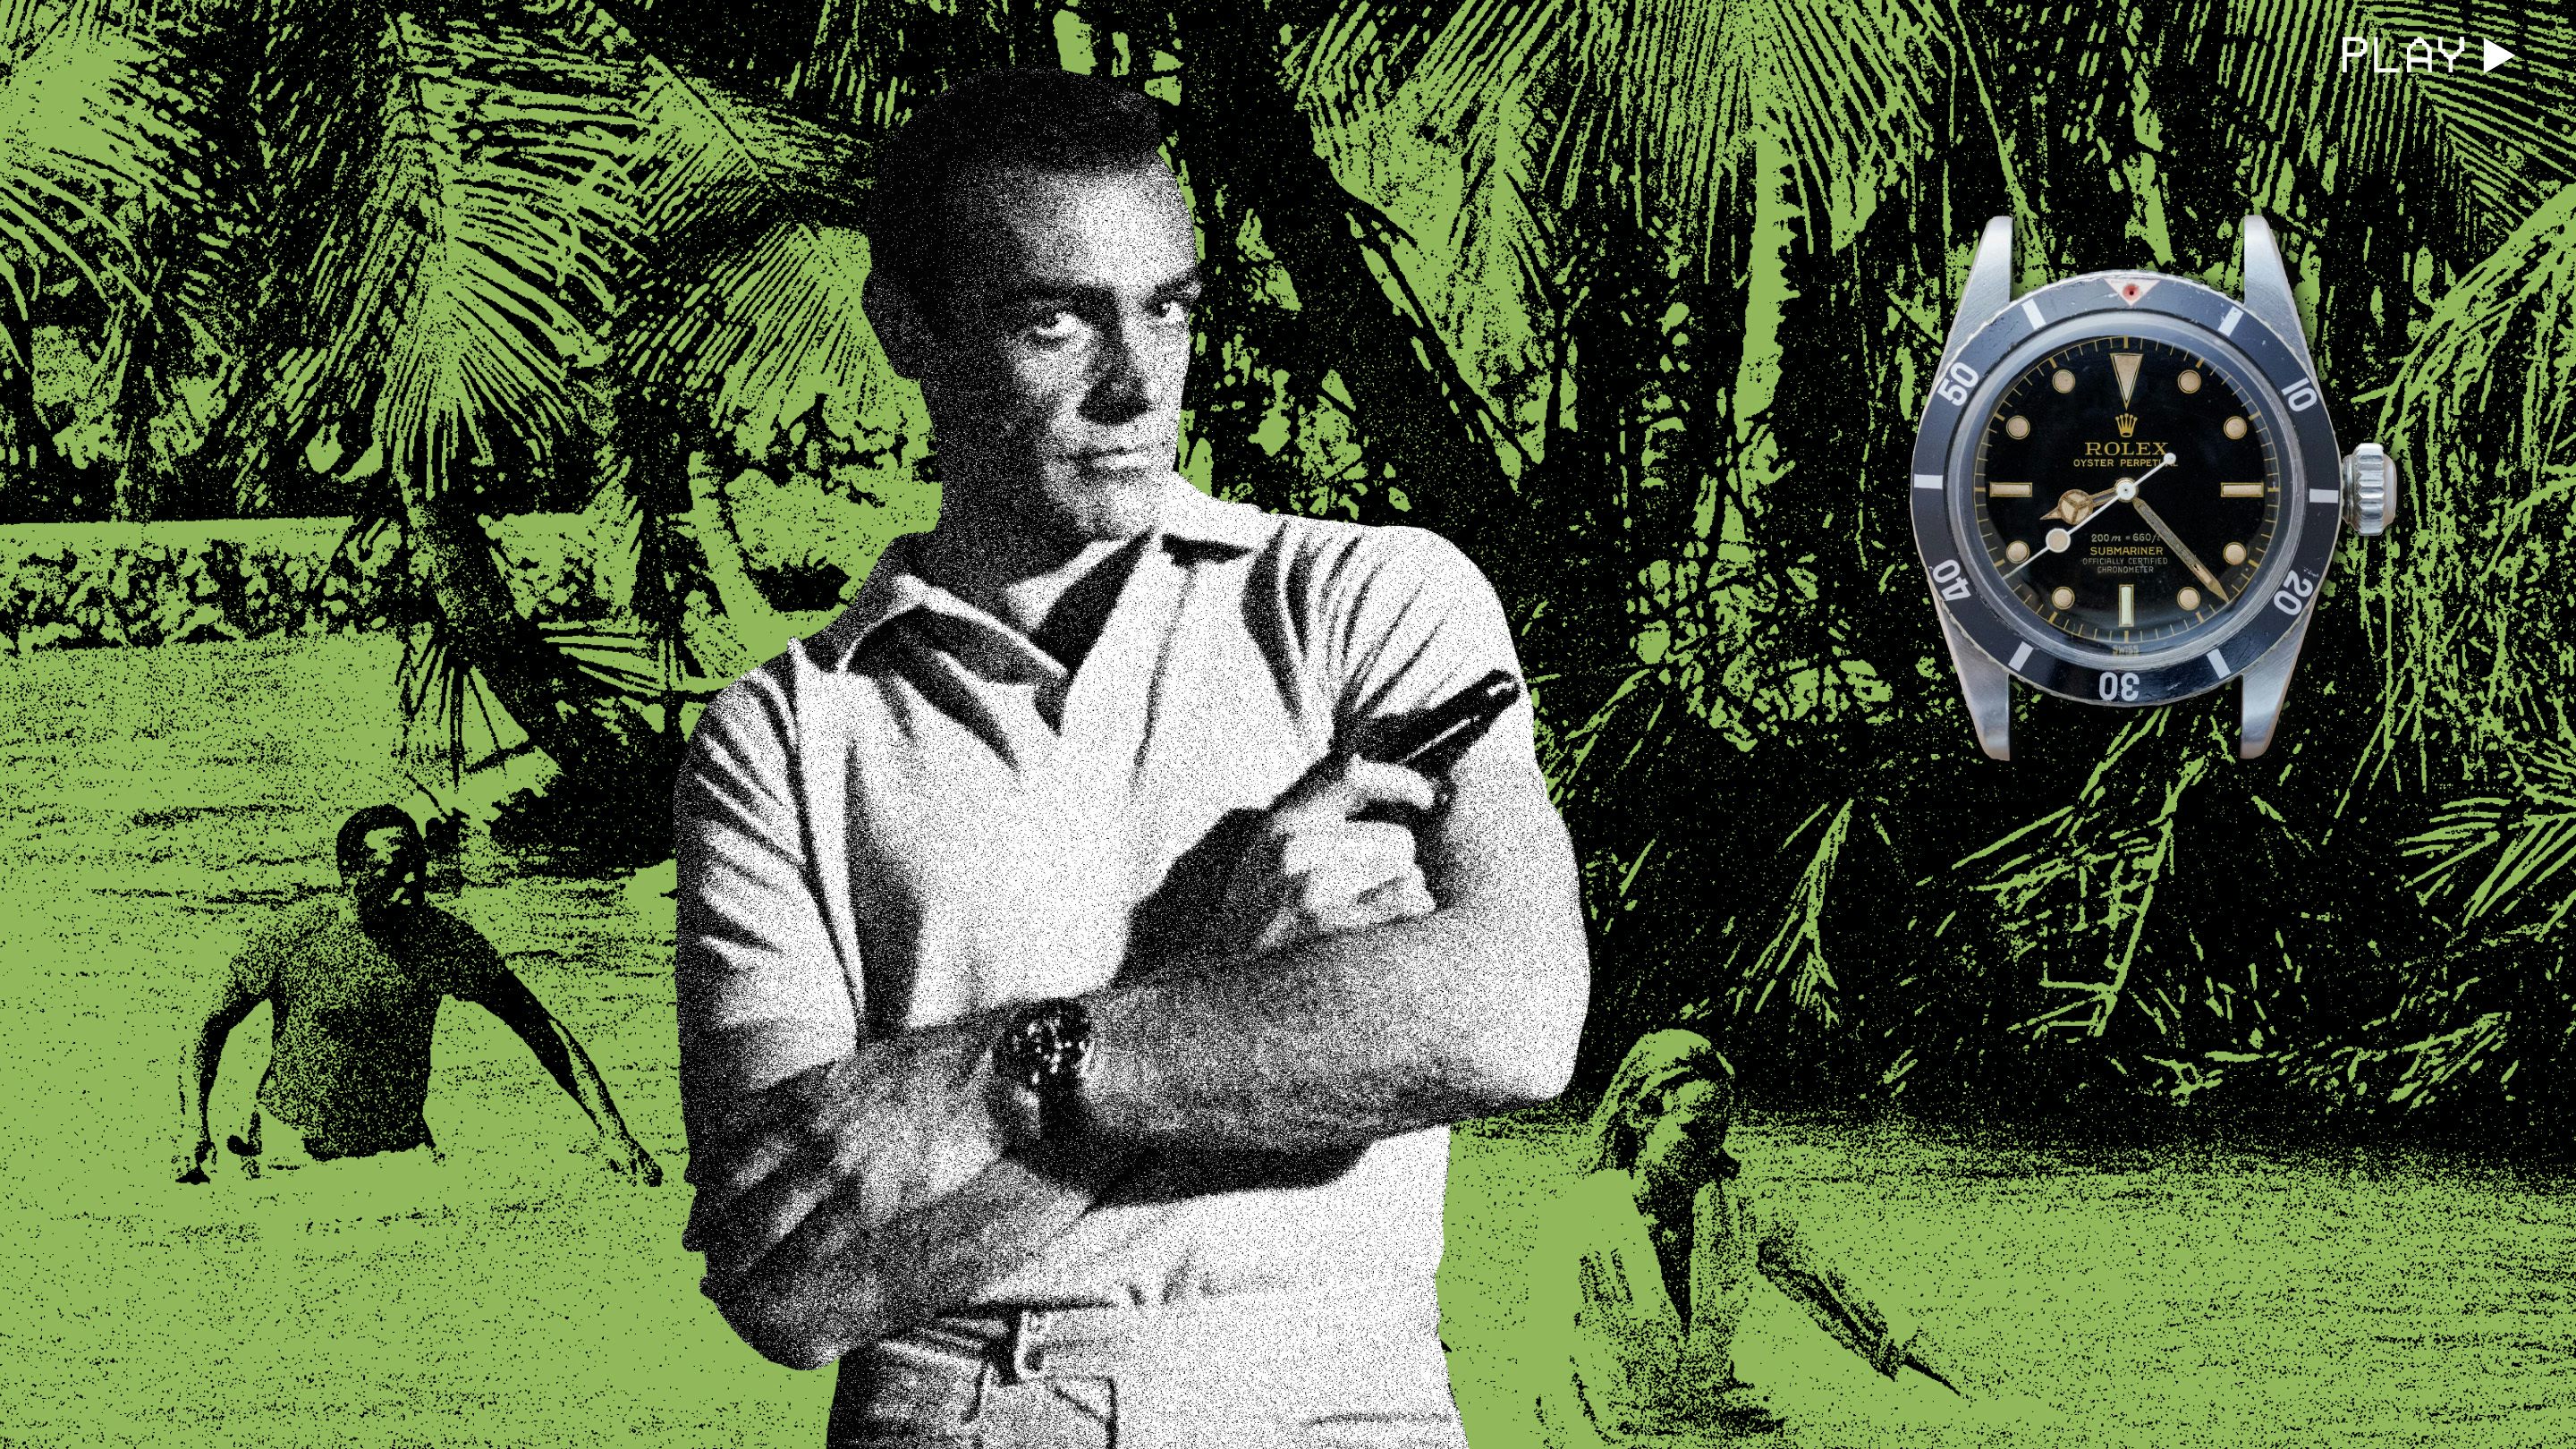 Forudsige grundlæggende tale What Watch Does James Bond Wear?